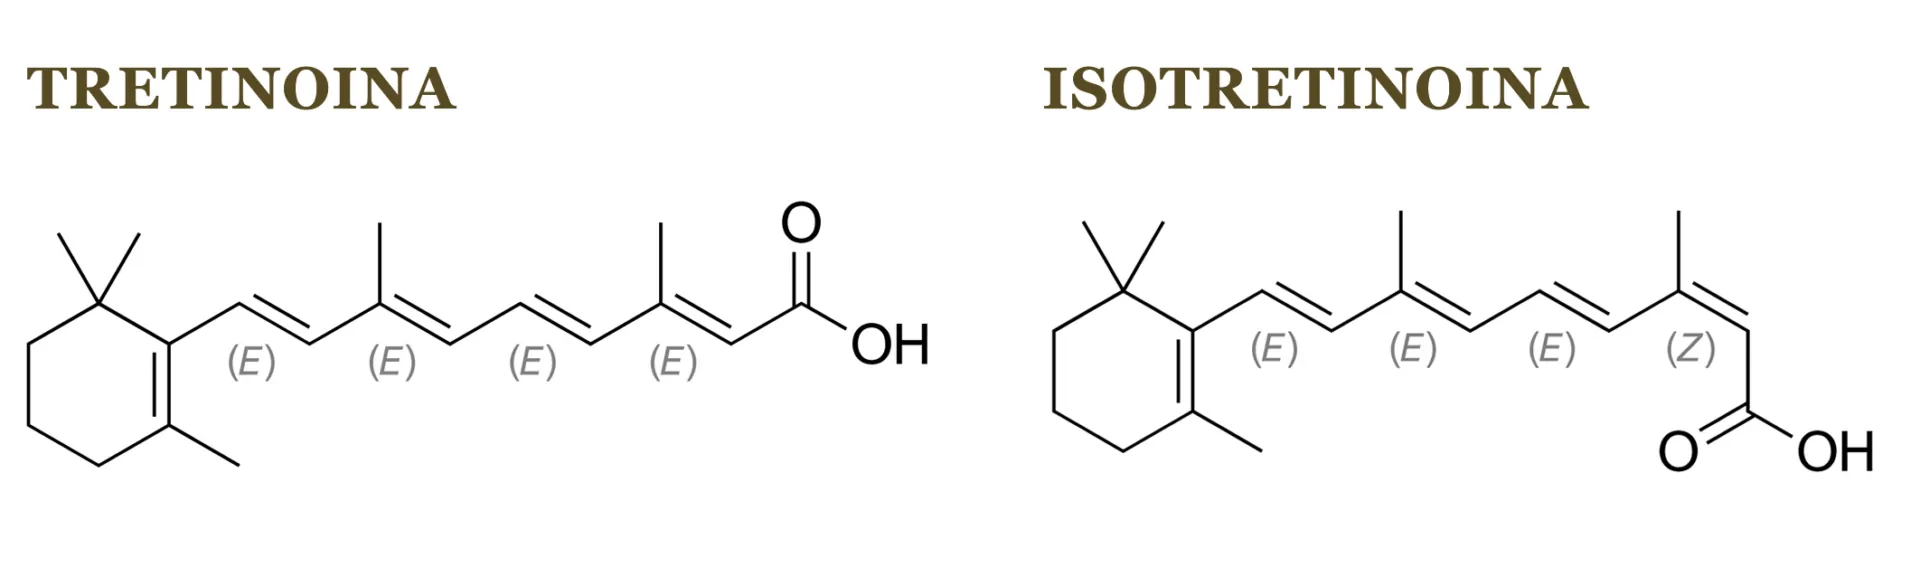 tretinoina isotretinoina